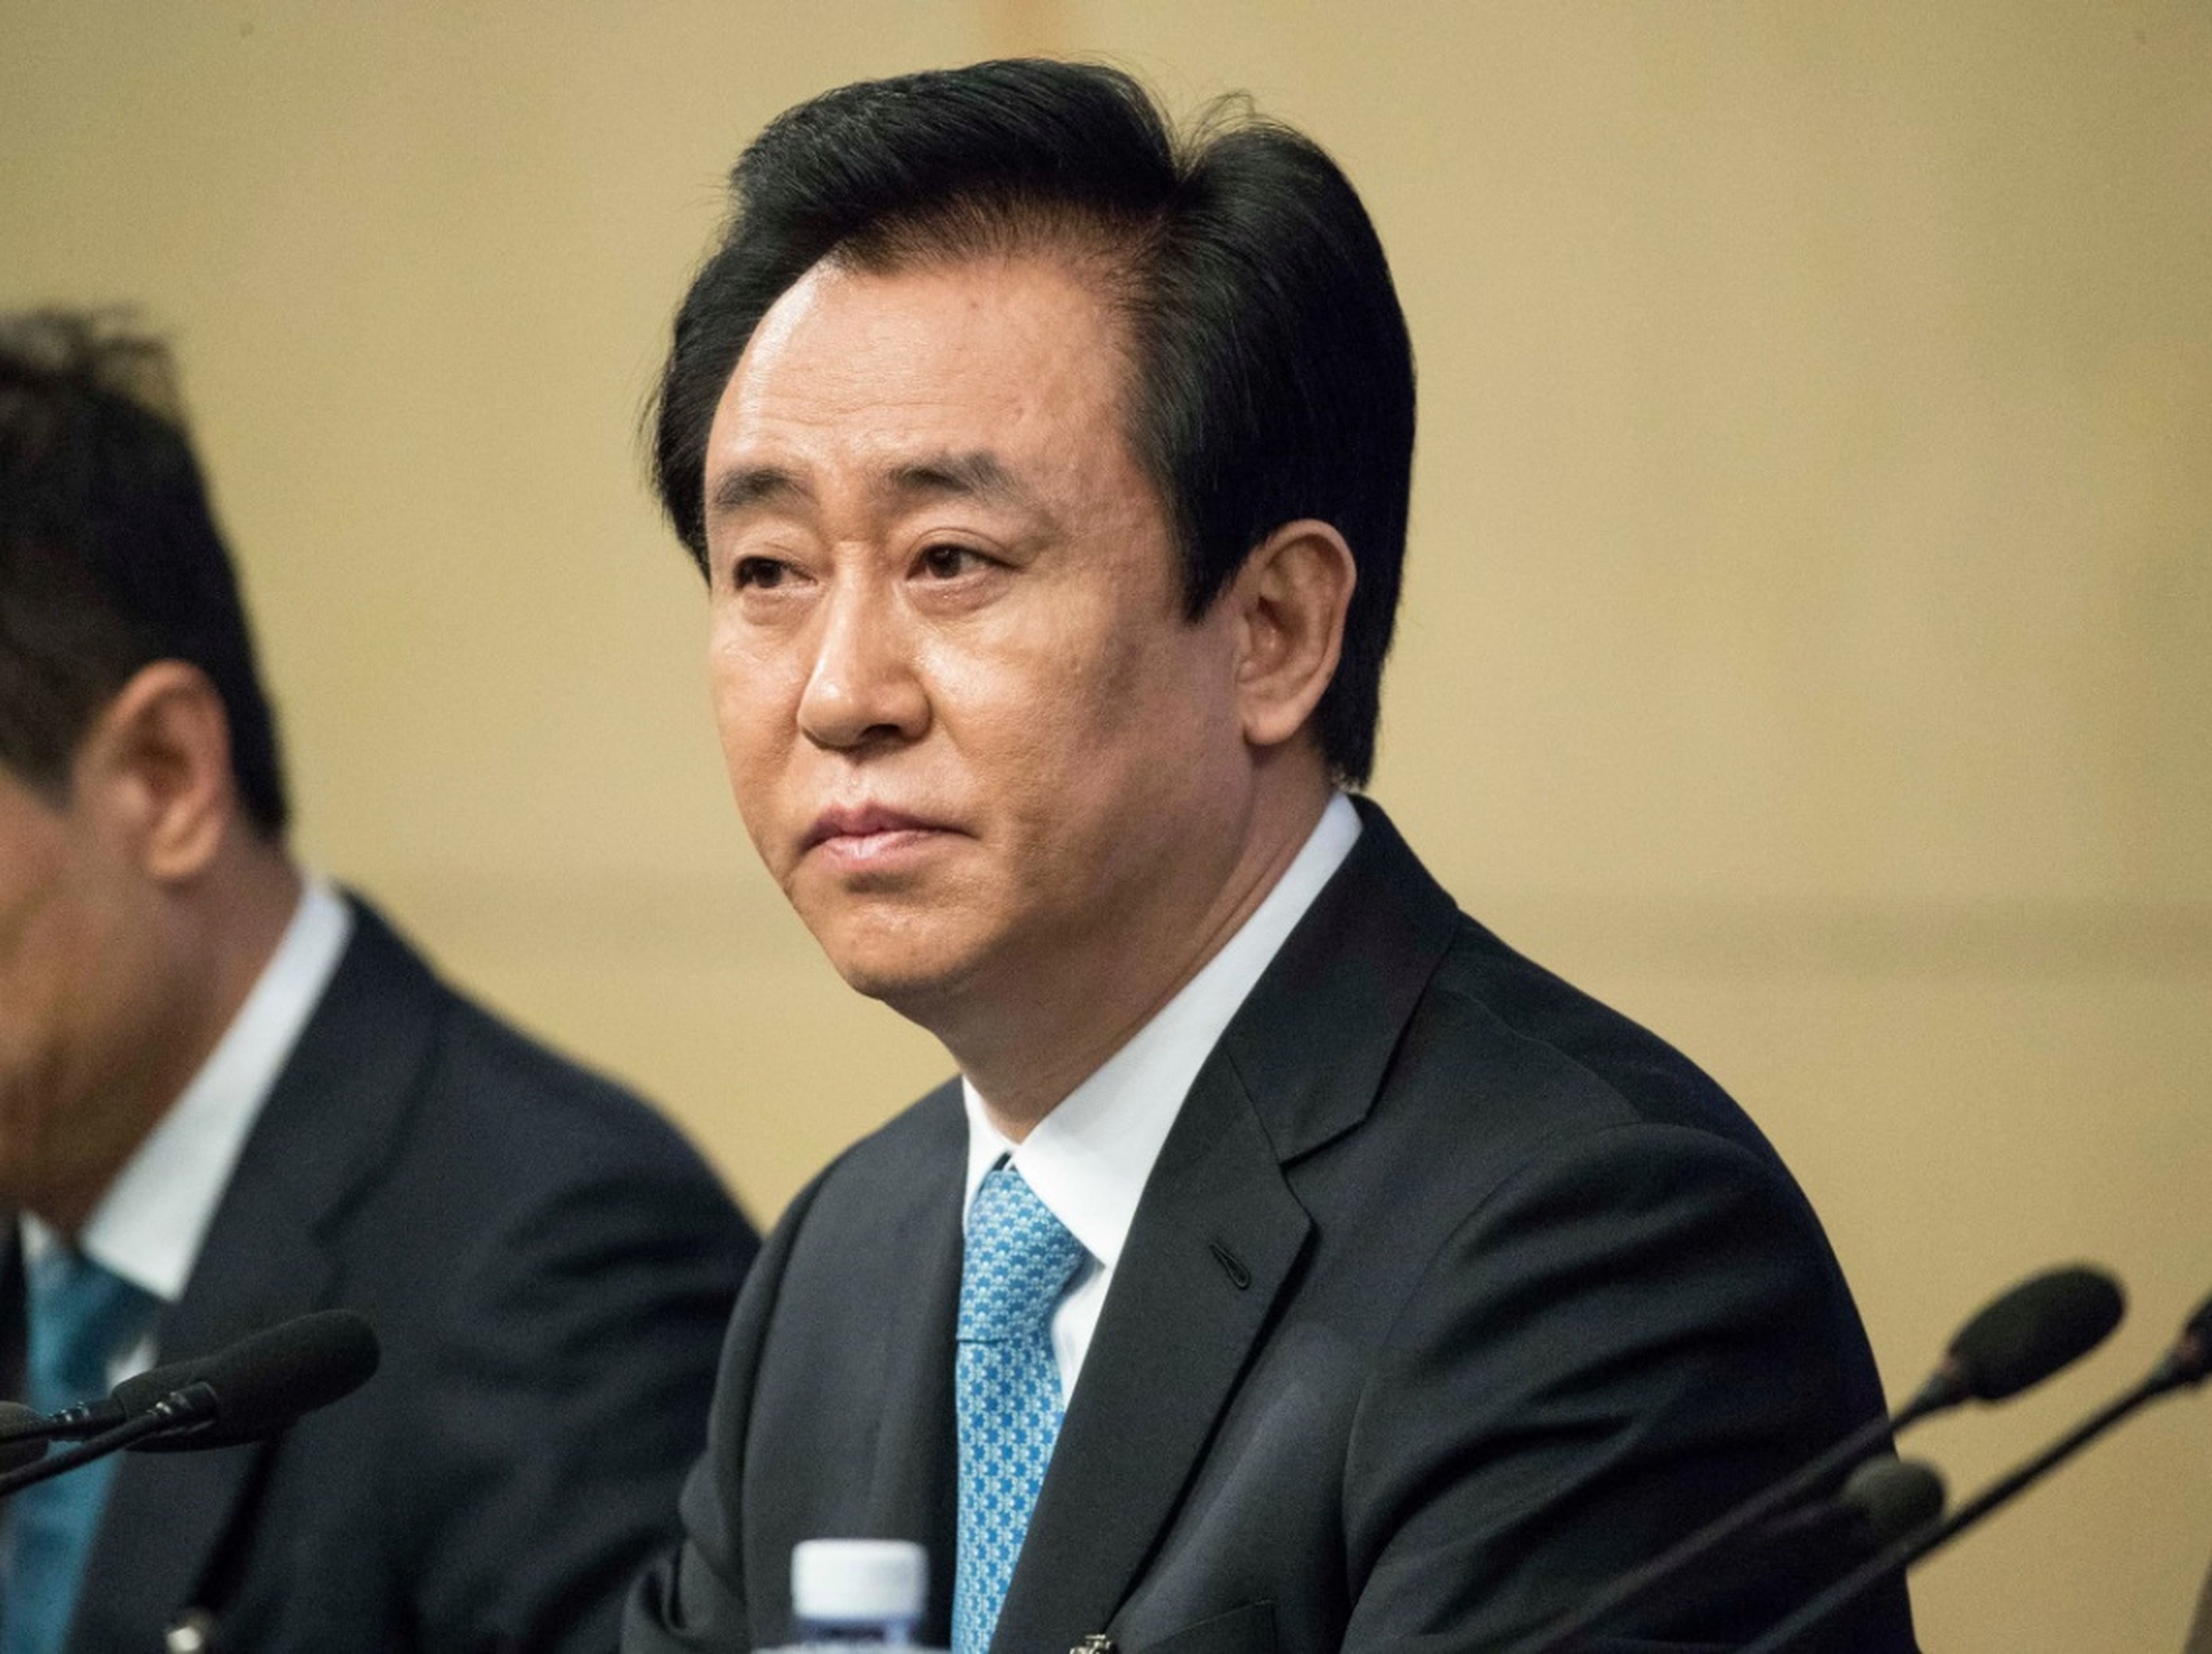 El fundador de China Evergrande, Hui Ka Yan, está siendo vigilado por las autoridades por presuntos delitos.